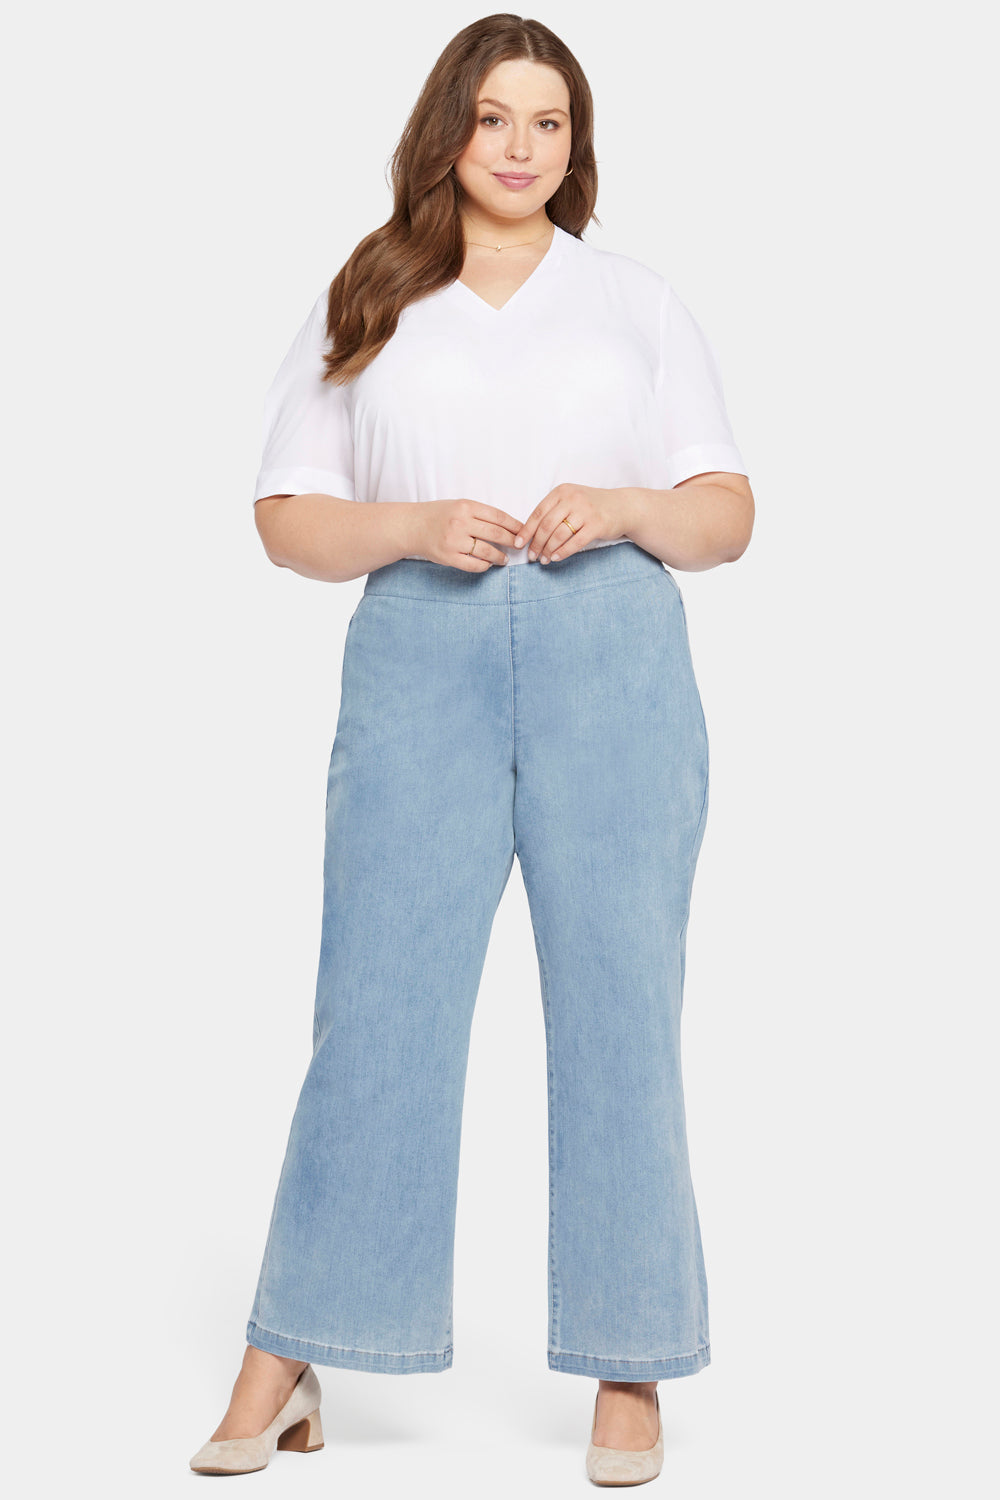 Plus Size Pants & Jeans for Women